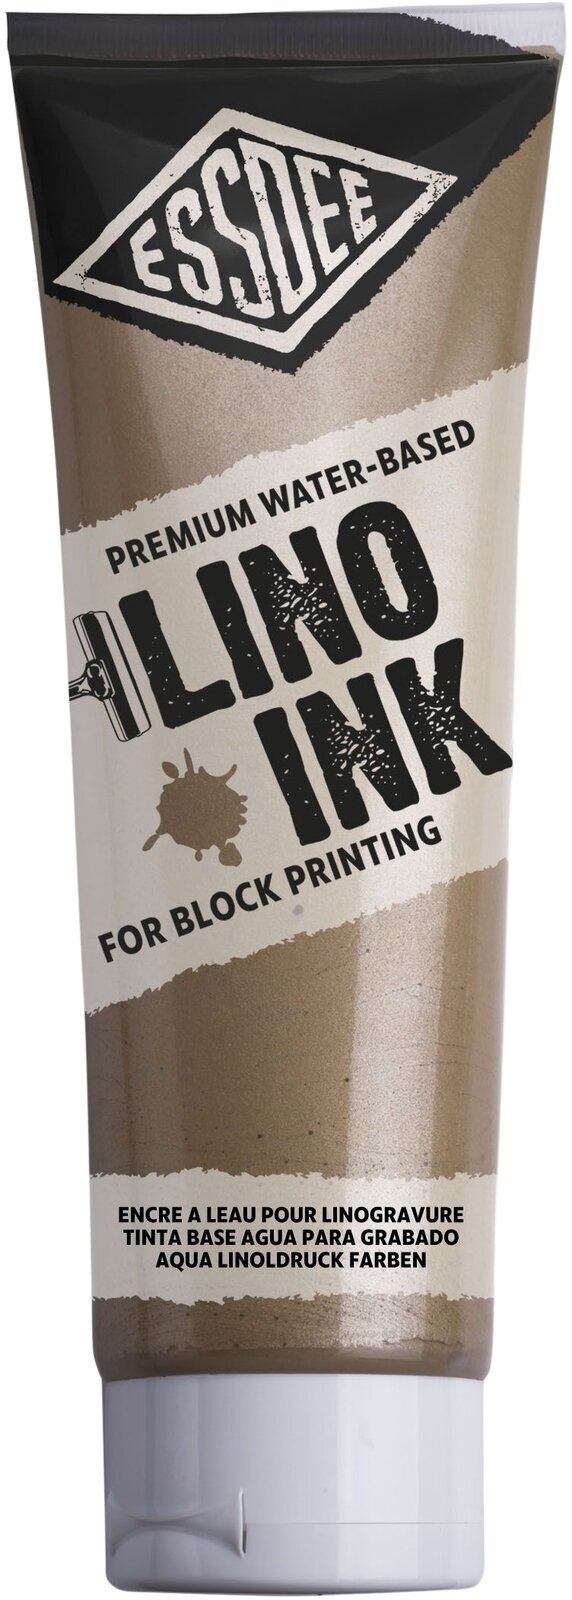 Χρώμα για λινογραφία Essdee Block Printing Ink Χρώμα για λινογραφία Metallic Gold 300 ml